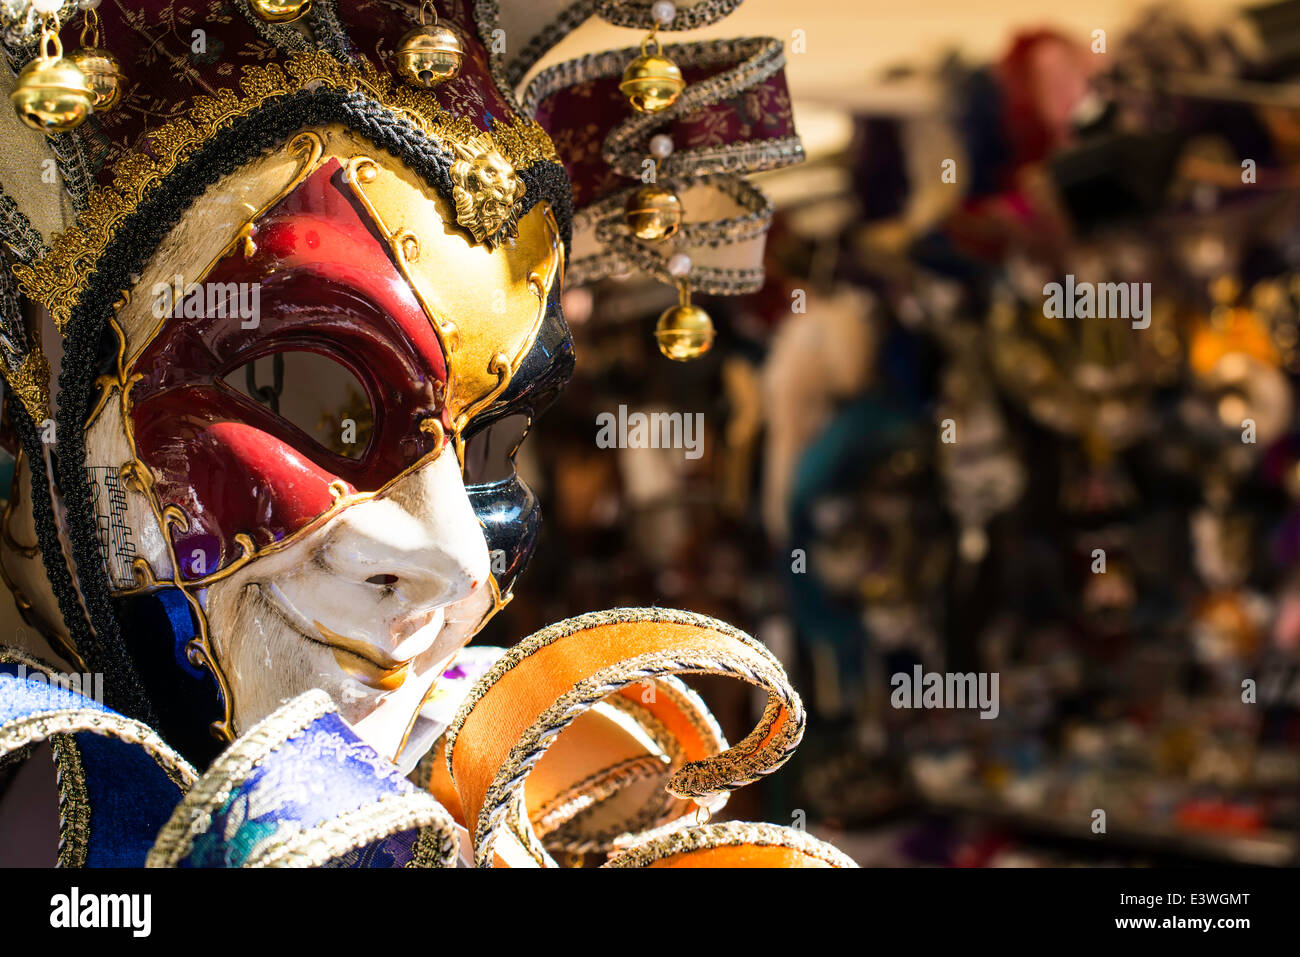 Carnevale veneziano maschere sul mercato di vendita Foto Stock